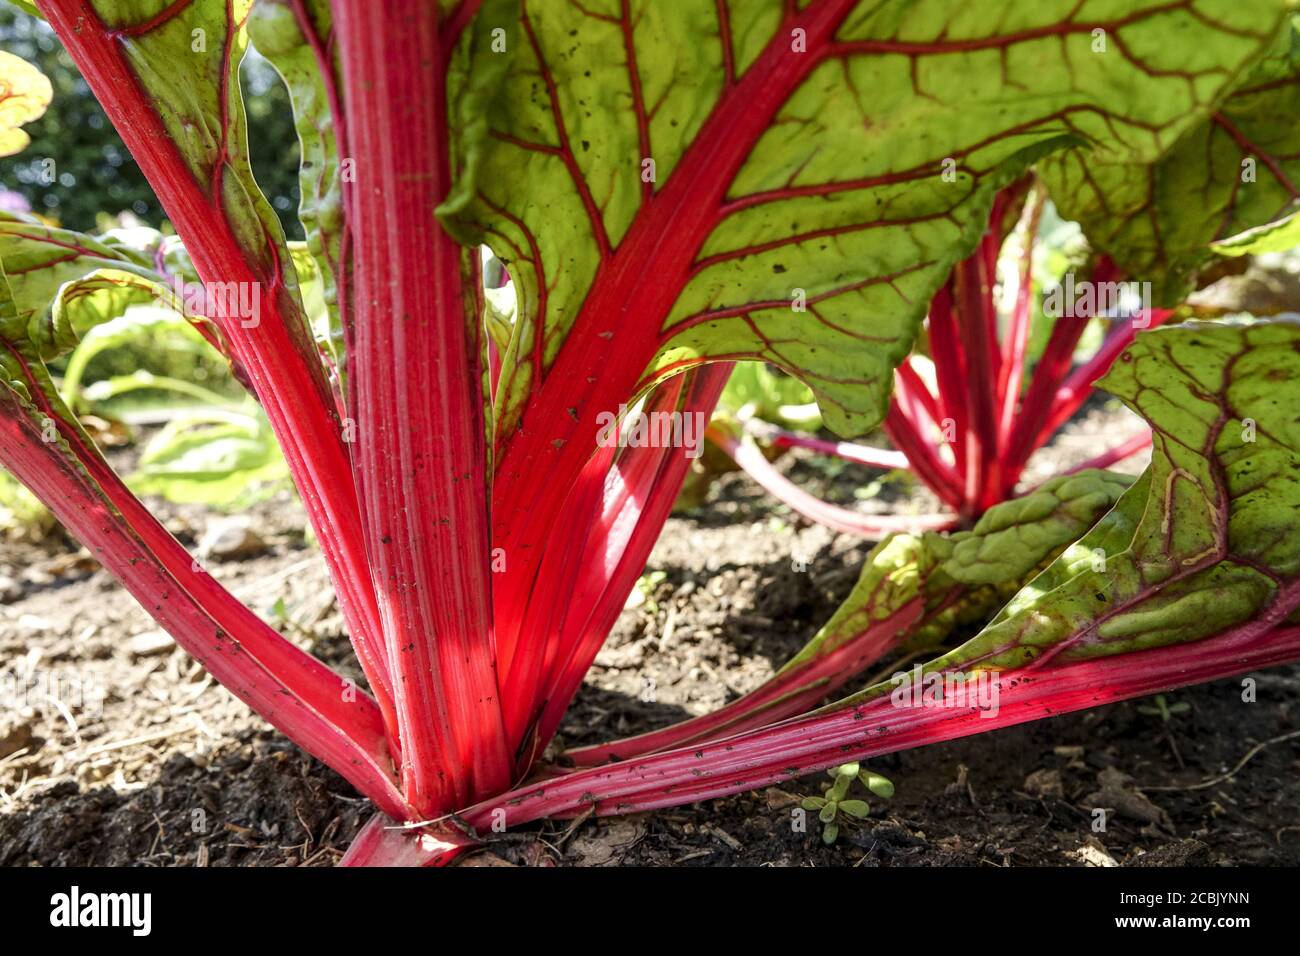 Jardin potager suisse mangold rouge pétioles Banque D'Images